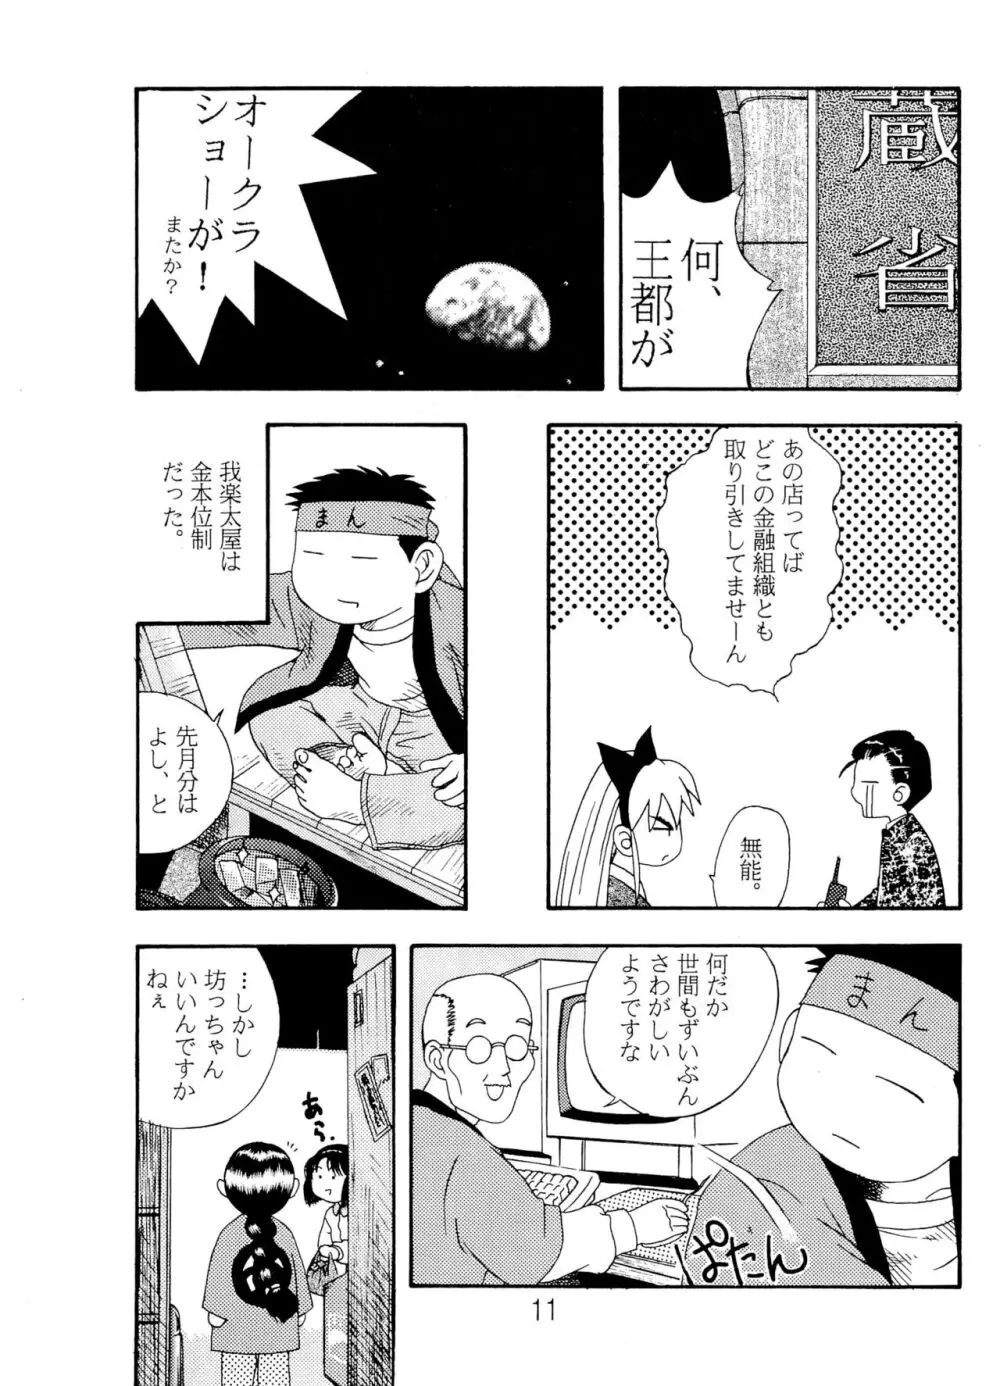 ANNA あ・ん・な・・・ - page11